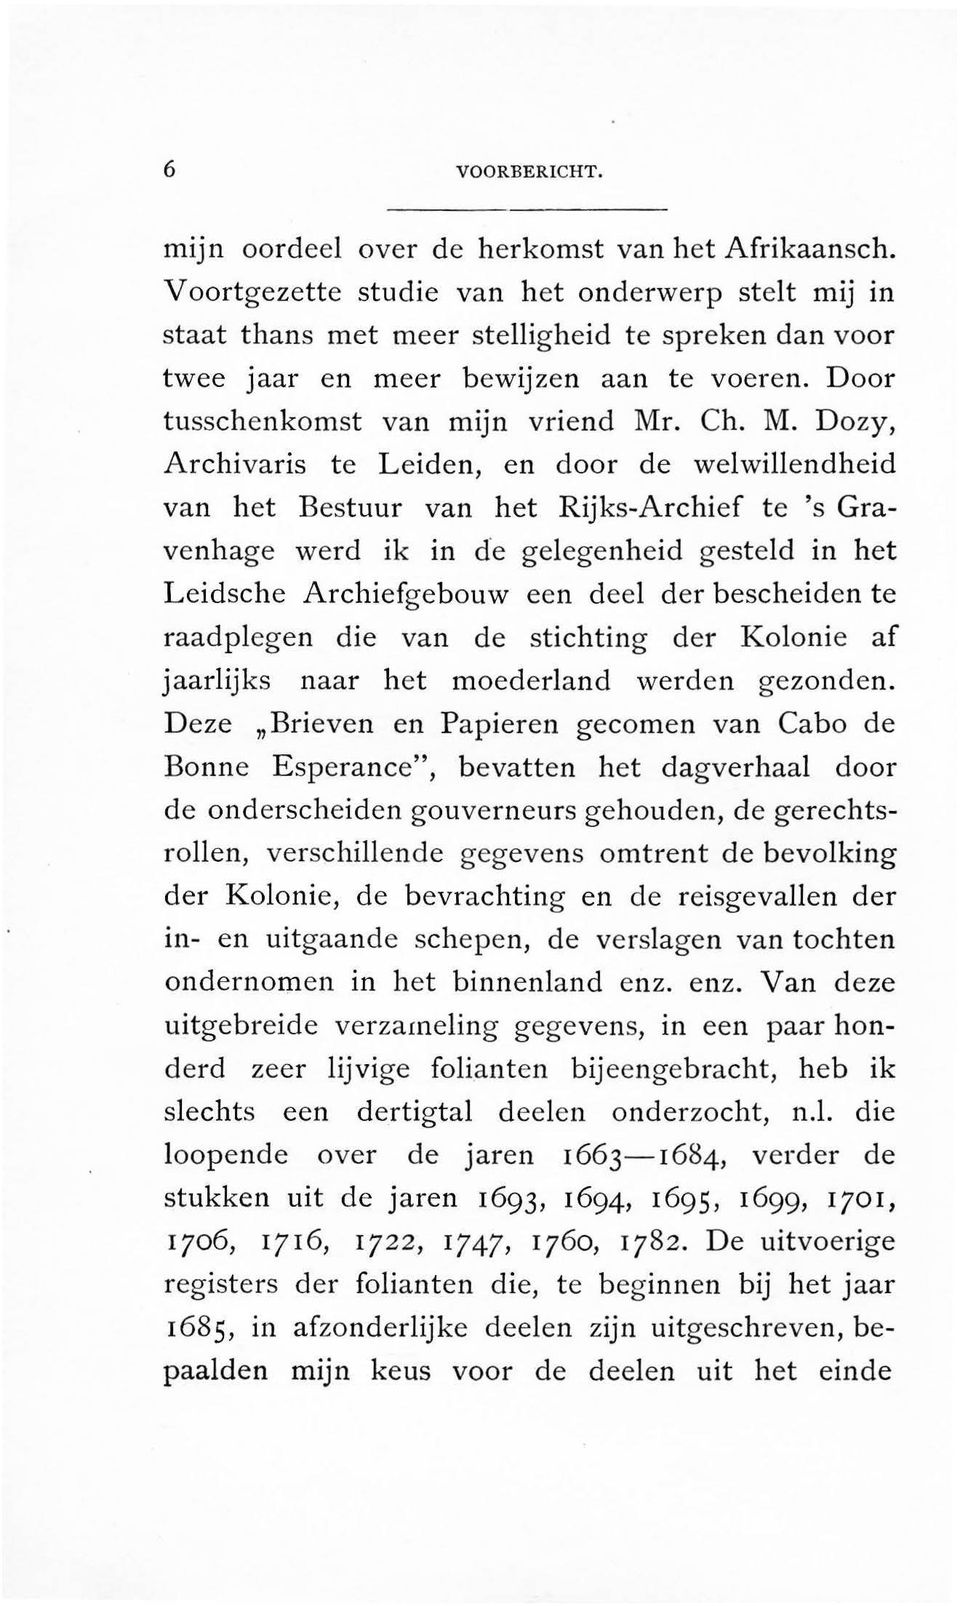 . Ch. M. Dozy, Archivaris te Leiden, en door de welwillendheid van het Bestuur van het Rijks-Archief te 's Gravenhage werd ik in de gelegenheid gesteld in het Leidsche Archiefgebouw een dee!